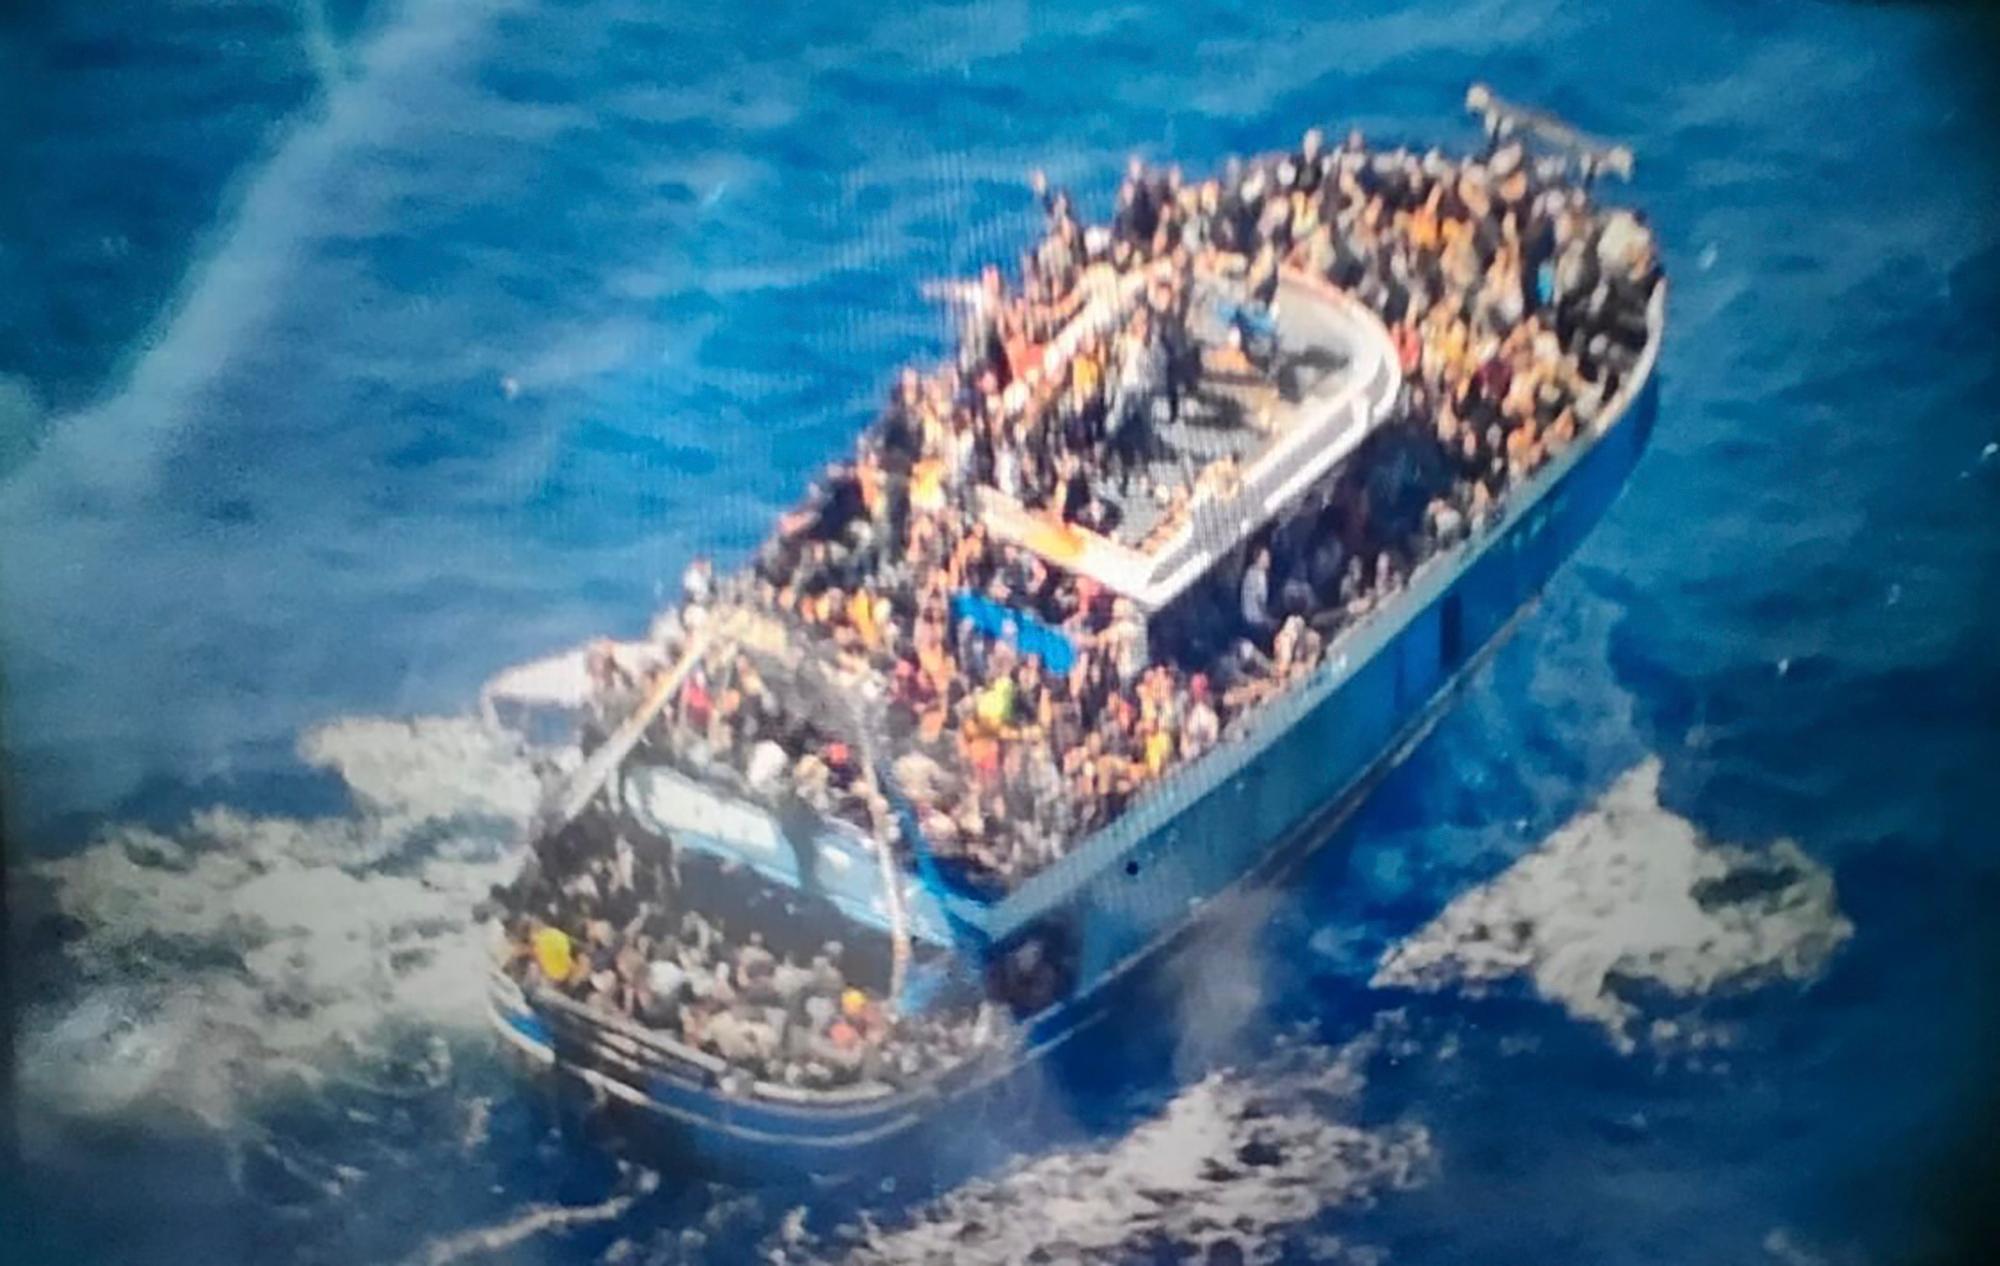 Hundratals migranter befann sig ombord det olycksdrabbade fartyget Adriana i juni i fjol. Foto: Greklands kustbevakning via AP/TT